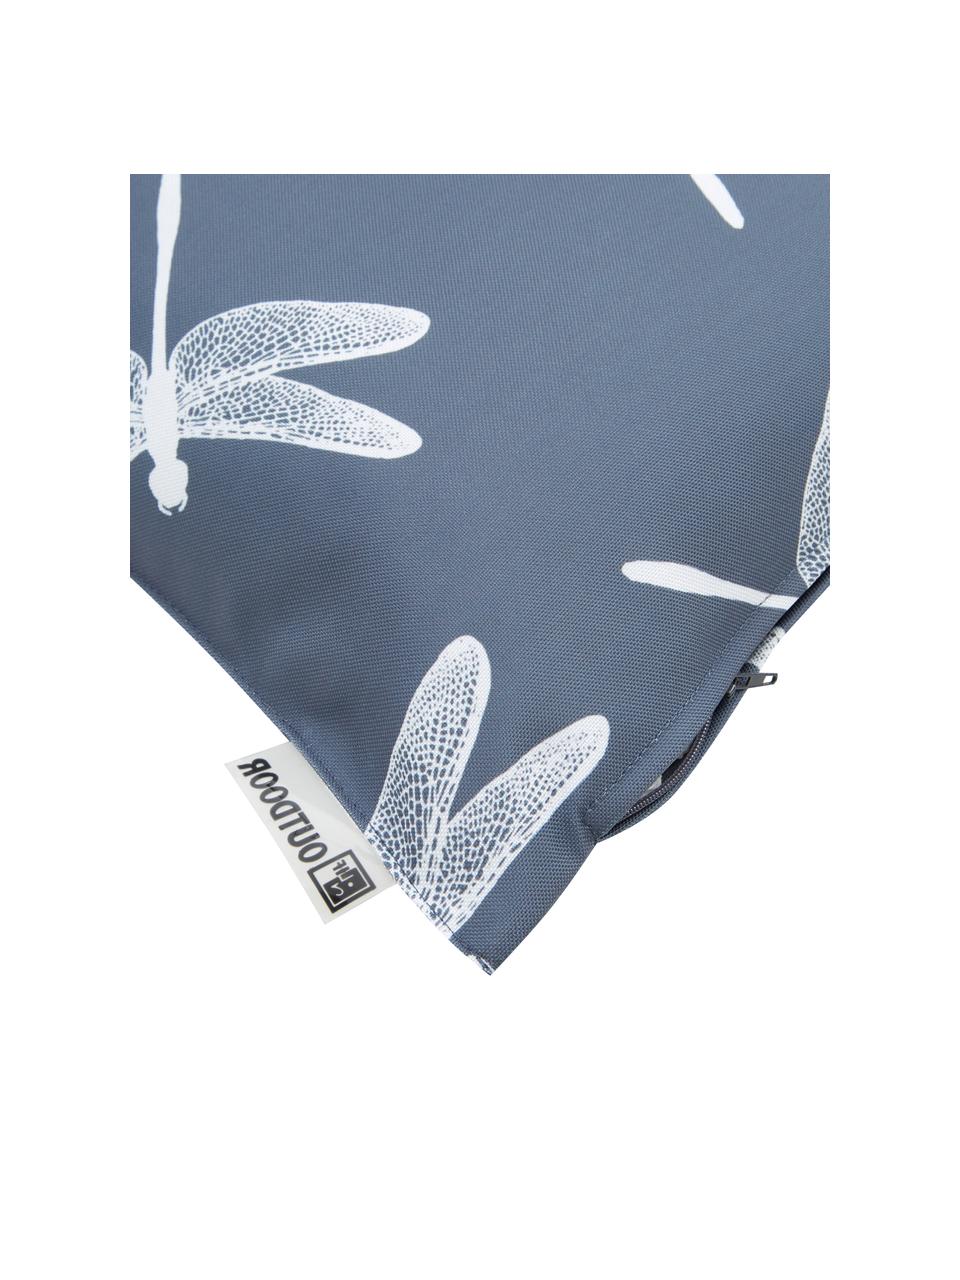 Outdoor kussen Dragonfly met libellen motief, 100% polyester, Donkergrijs, wit, 47 x 47 cm